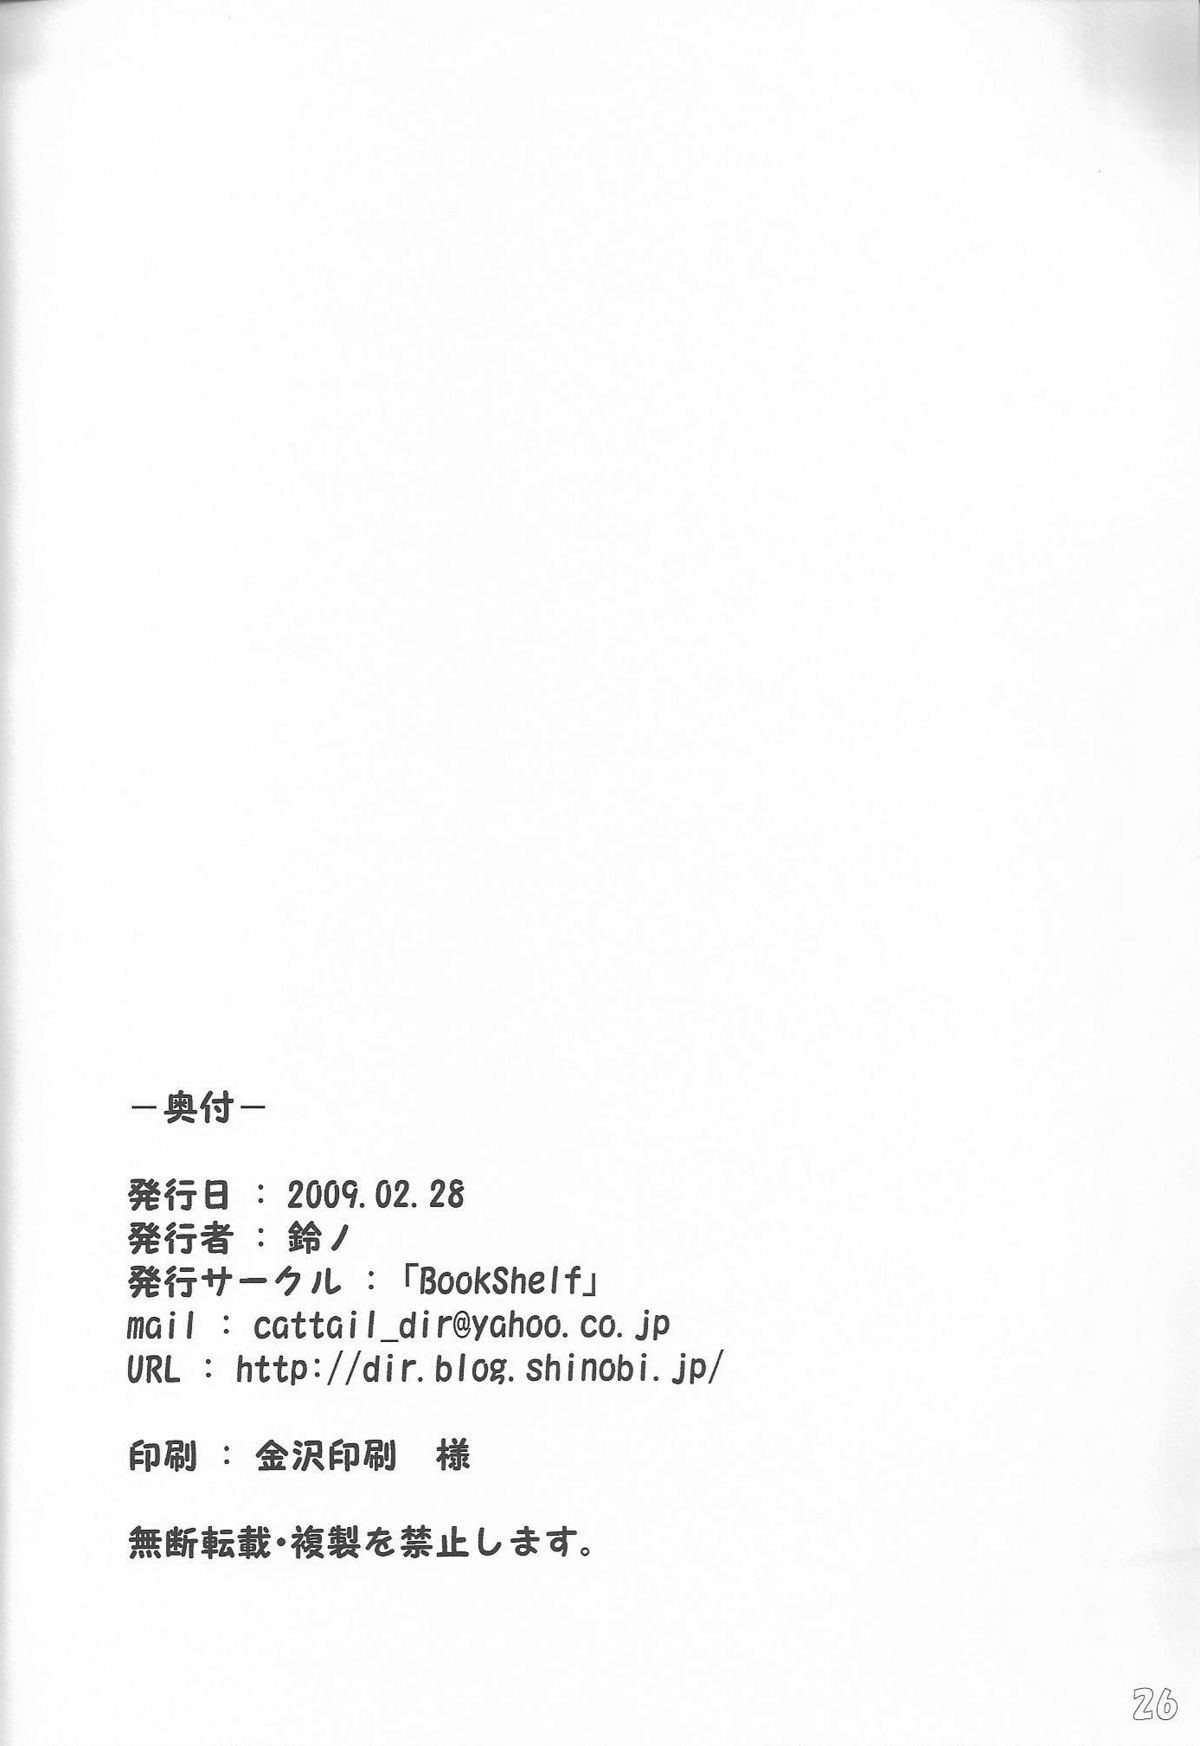 [Bookshelf (鈴ノ)] f6aとf8b (ファイナルファンタジー XI)